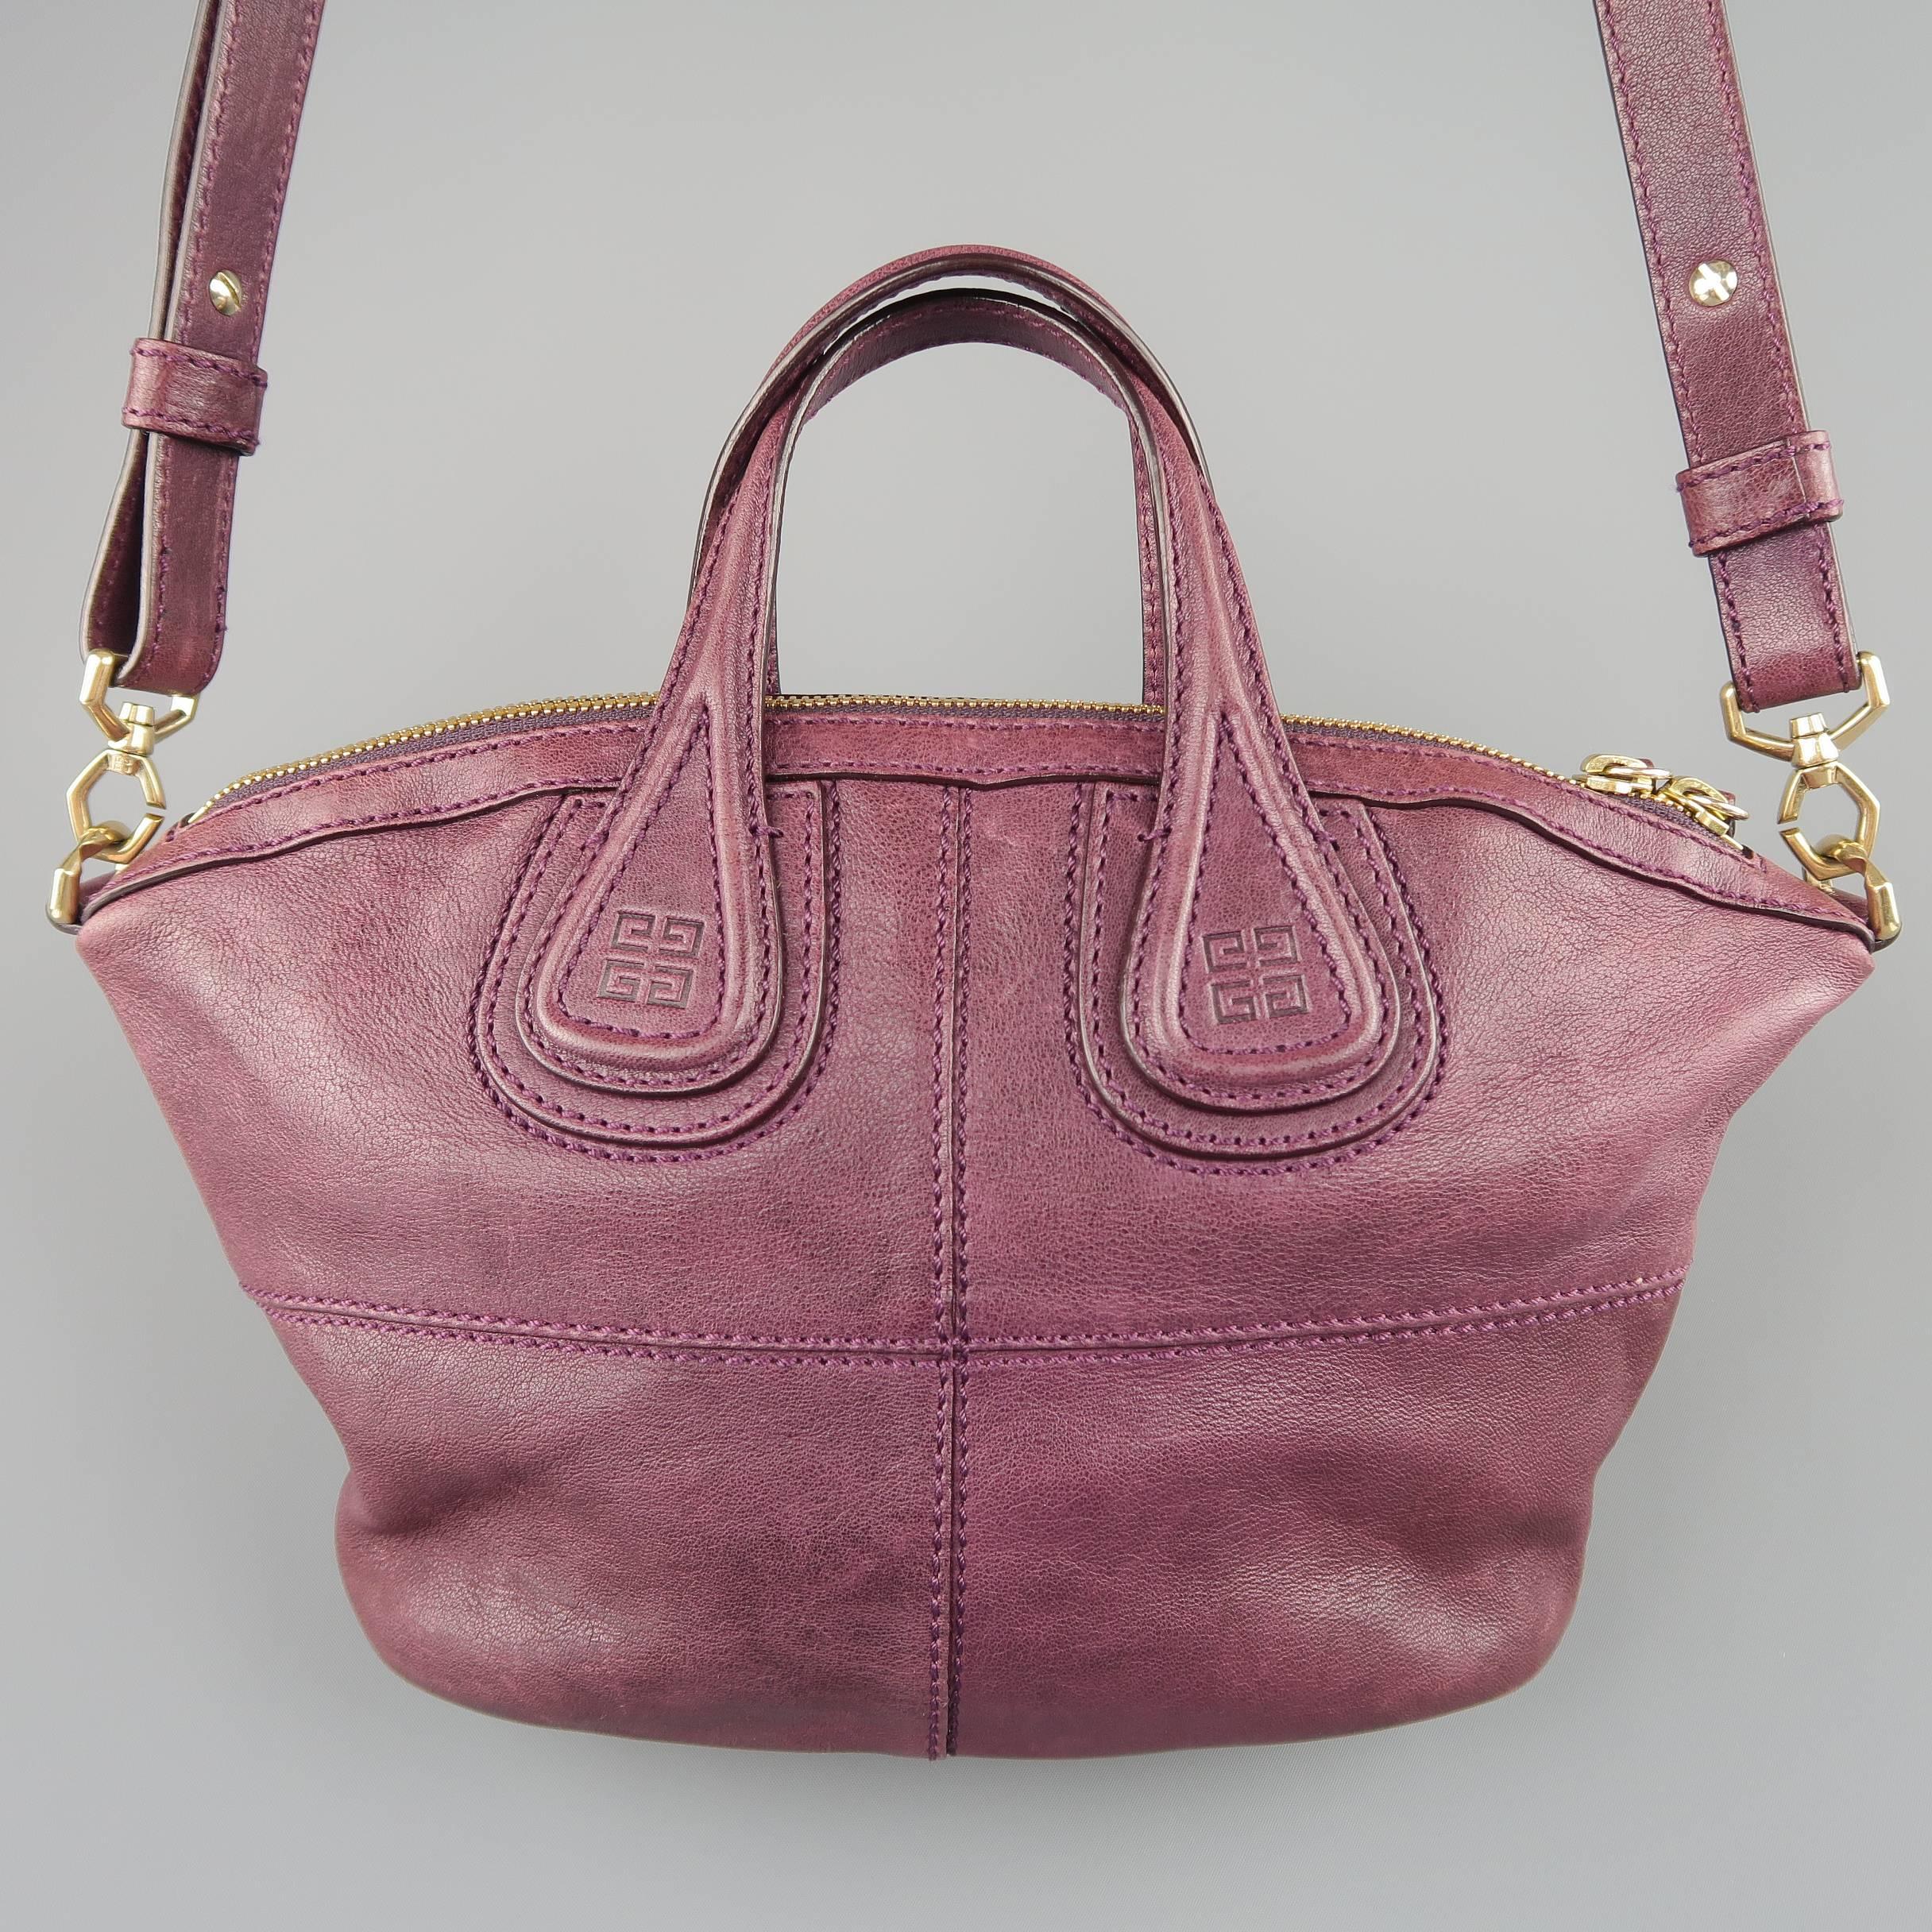 givenchy nightingale handbag